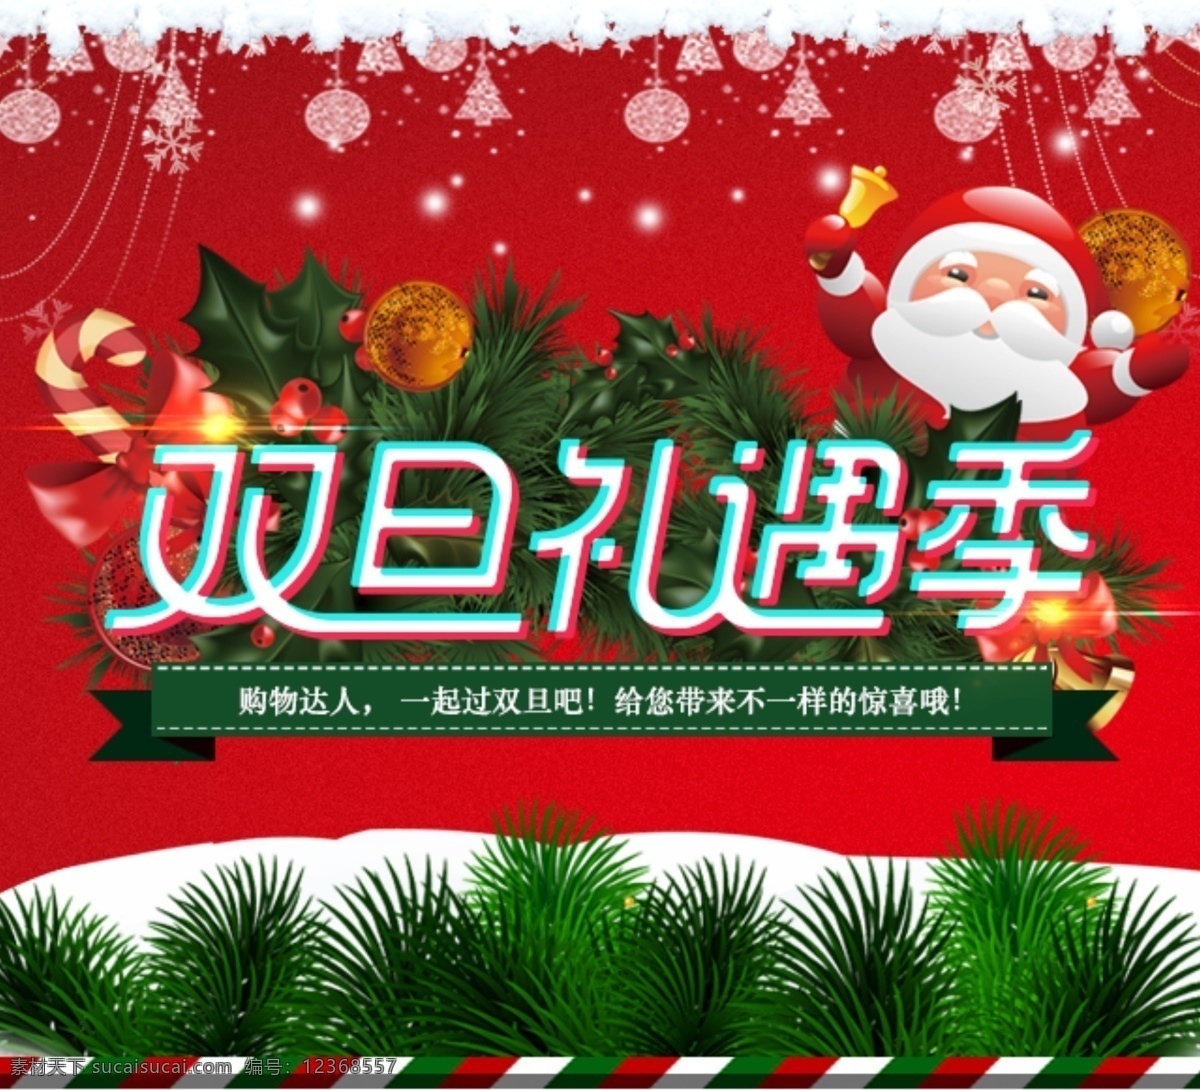 双 蛋 节 手机 端 海报 促销 活动 圣诞节 双旦礼遇季 淘宝 天猫手机端 元旦节